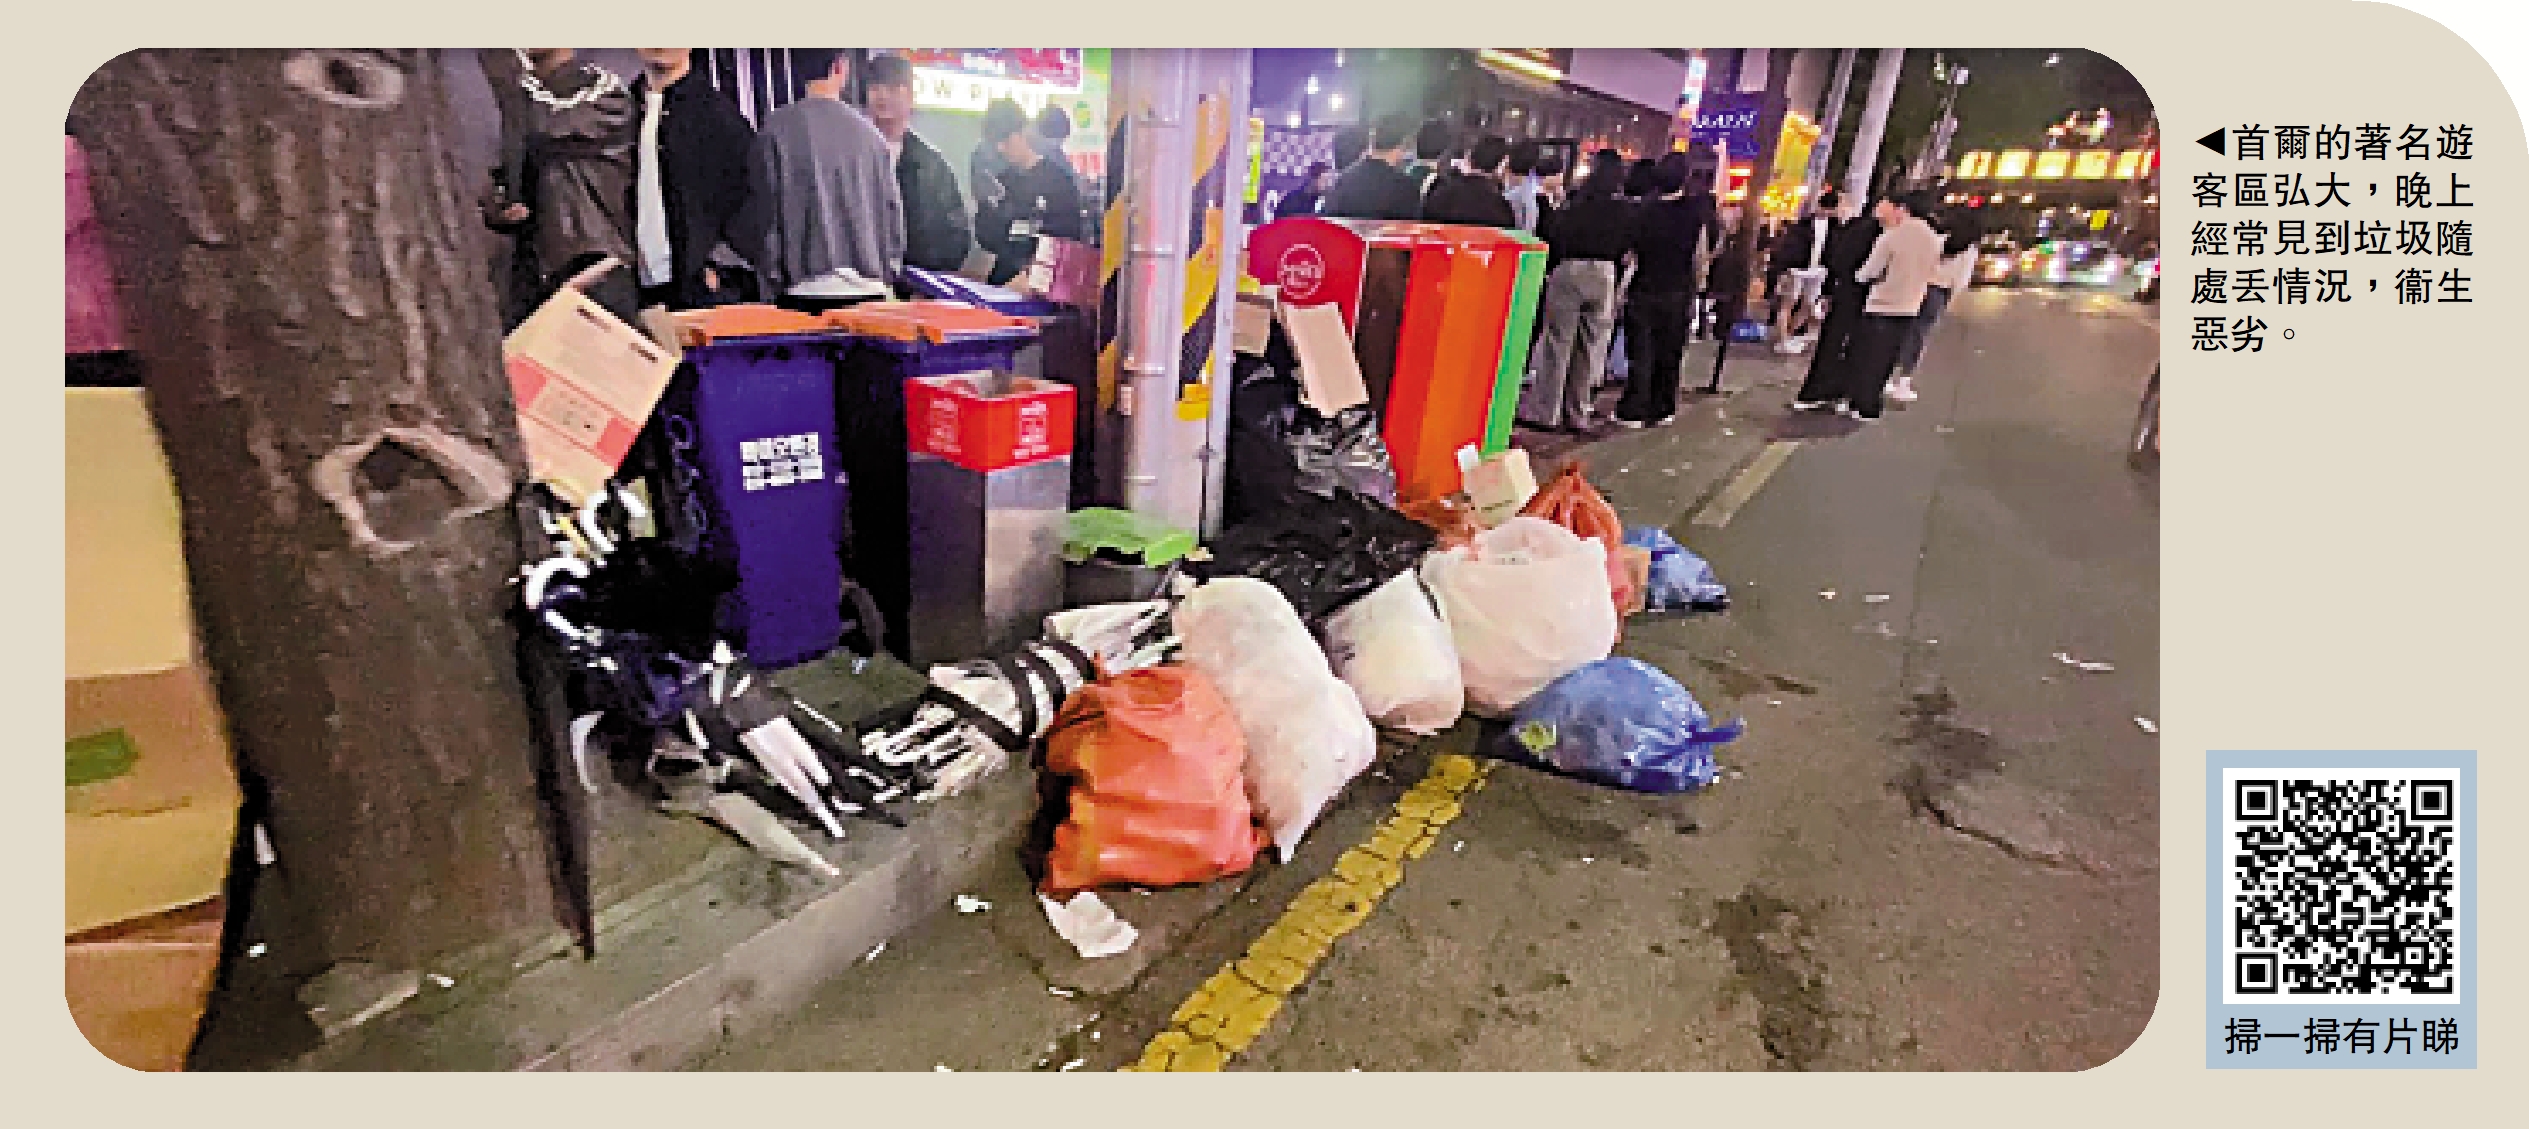 　　圖：首爾的著名遊客區弘大，晚上經常見到垃圾隨處丟情況，衞生惡劣。